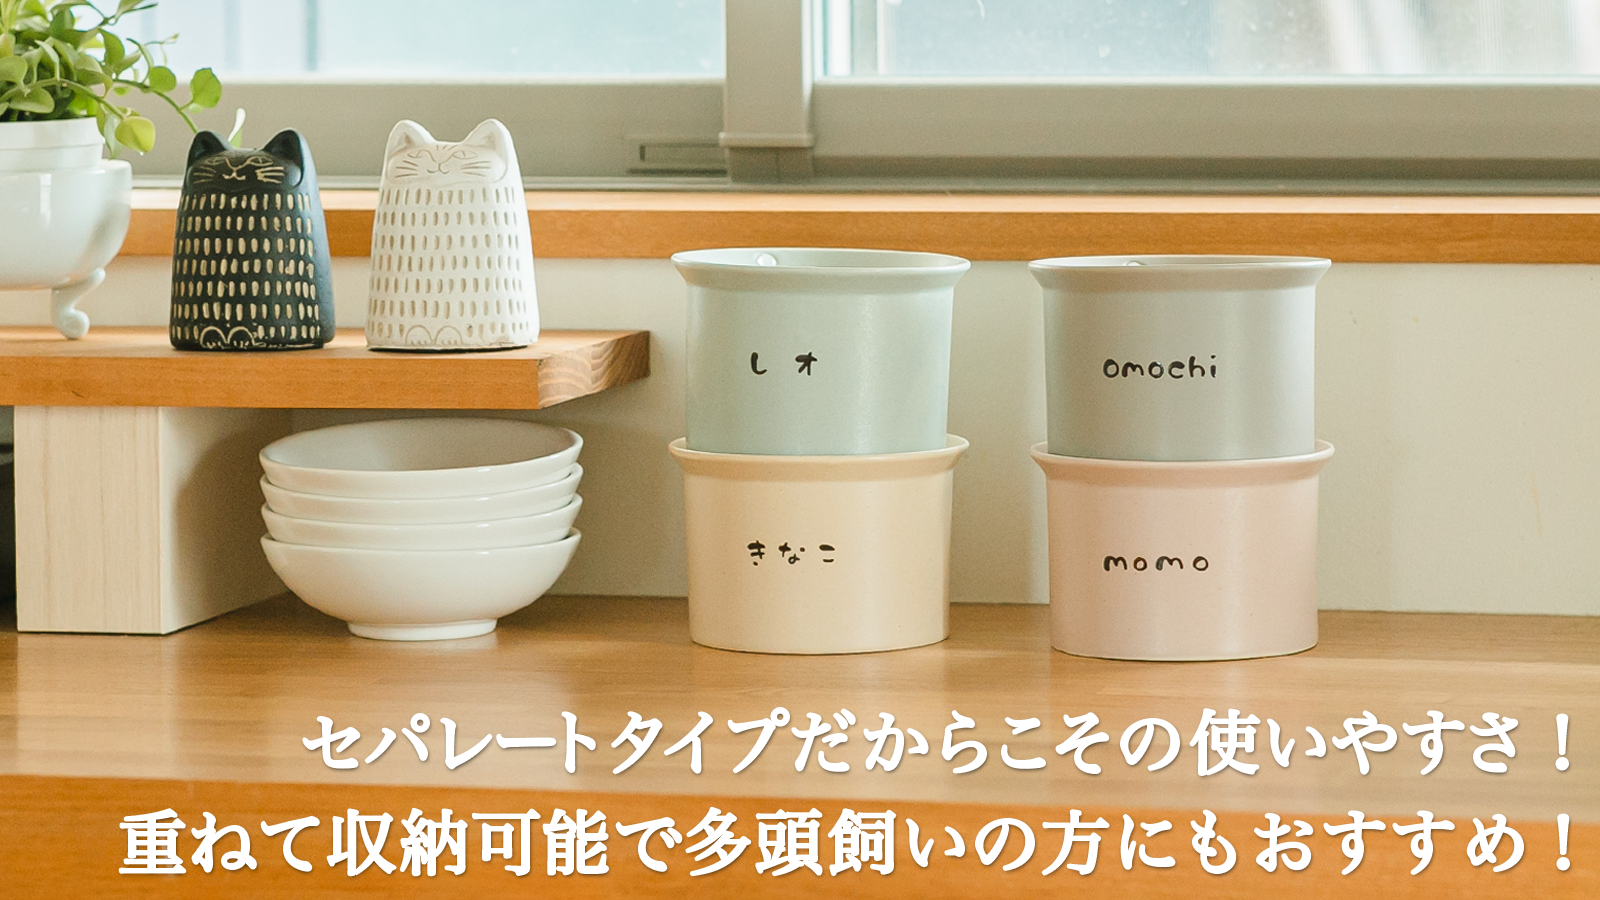 かたむけて ねこ茶碗 土台単品 フードボウル 食器 陶器 キャットフード エサ えさ入れ 角度が変えられる 食べやすい 洗いやすい 日本製